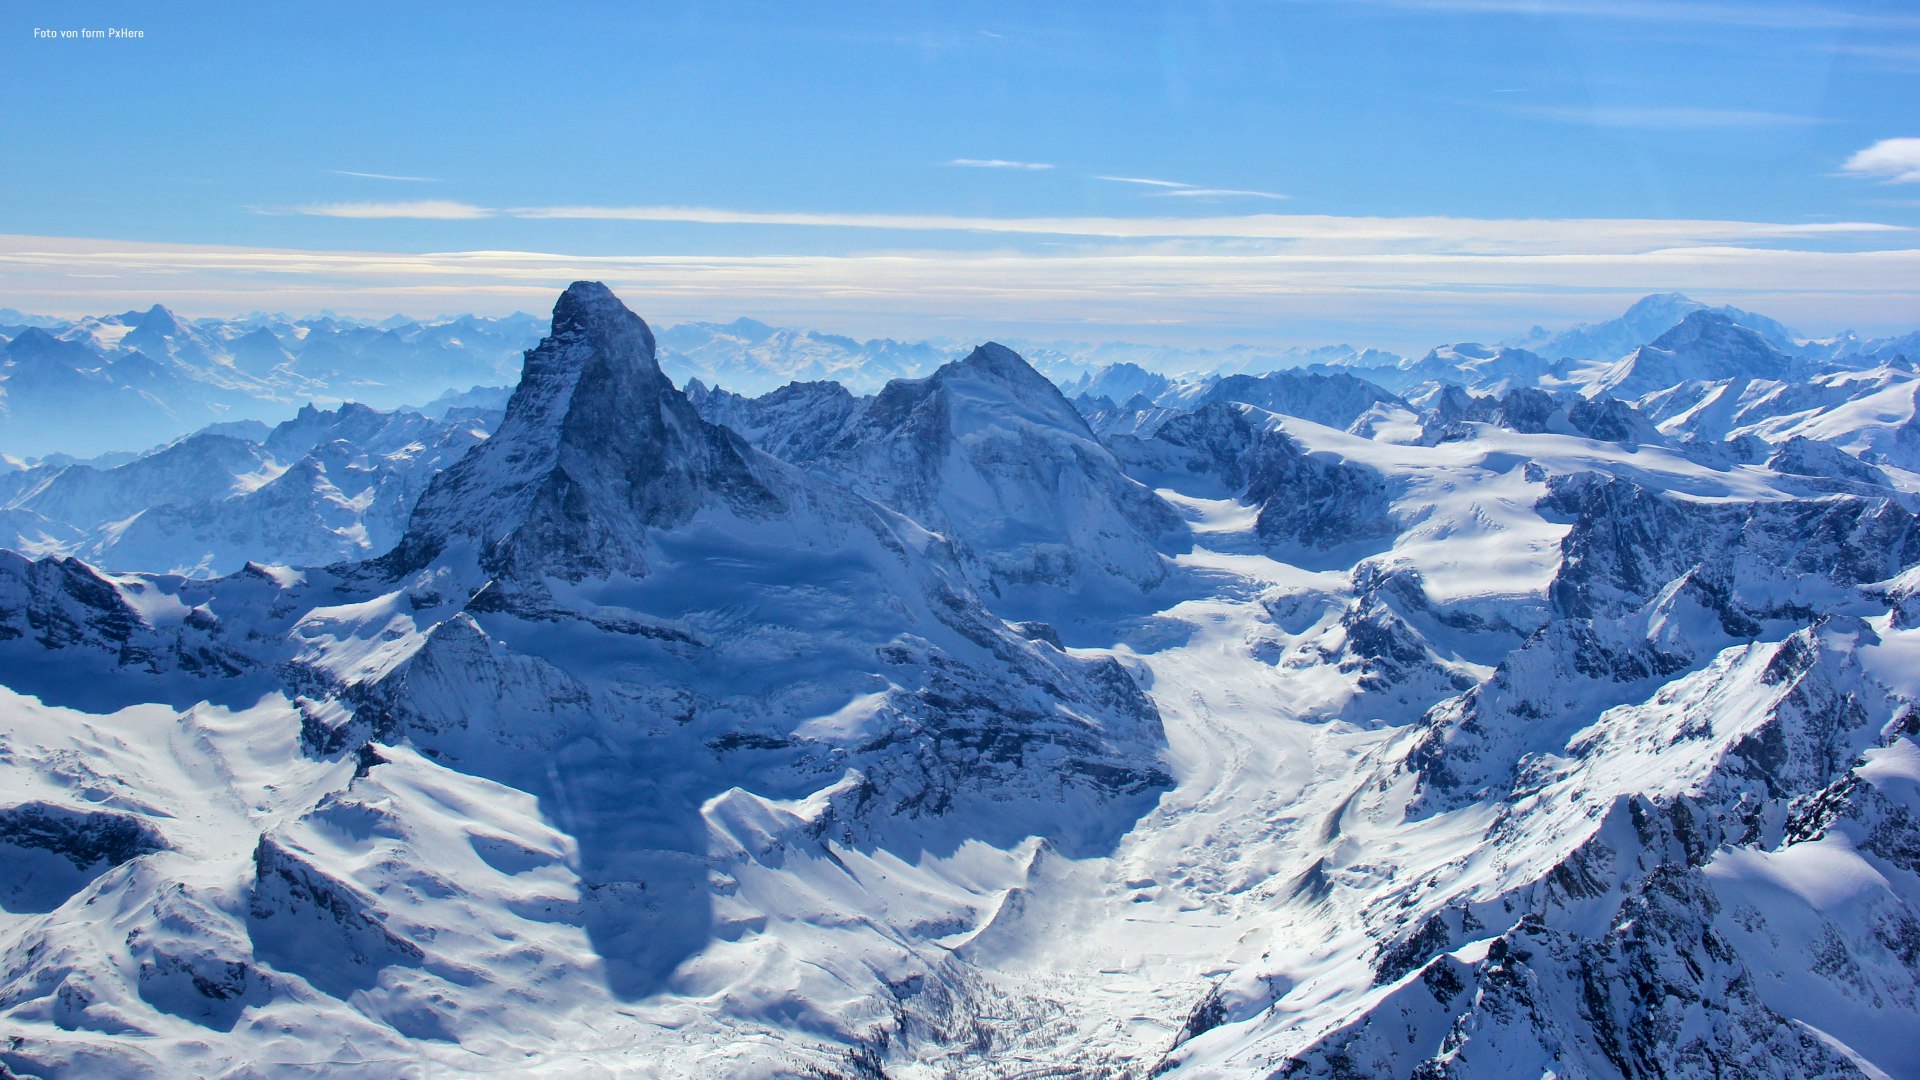 Rundflug Matterhorn